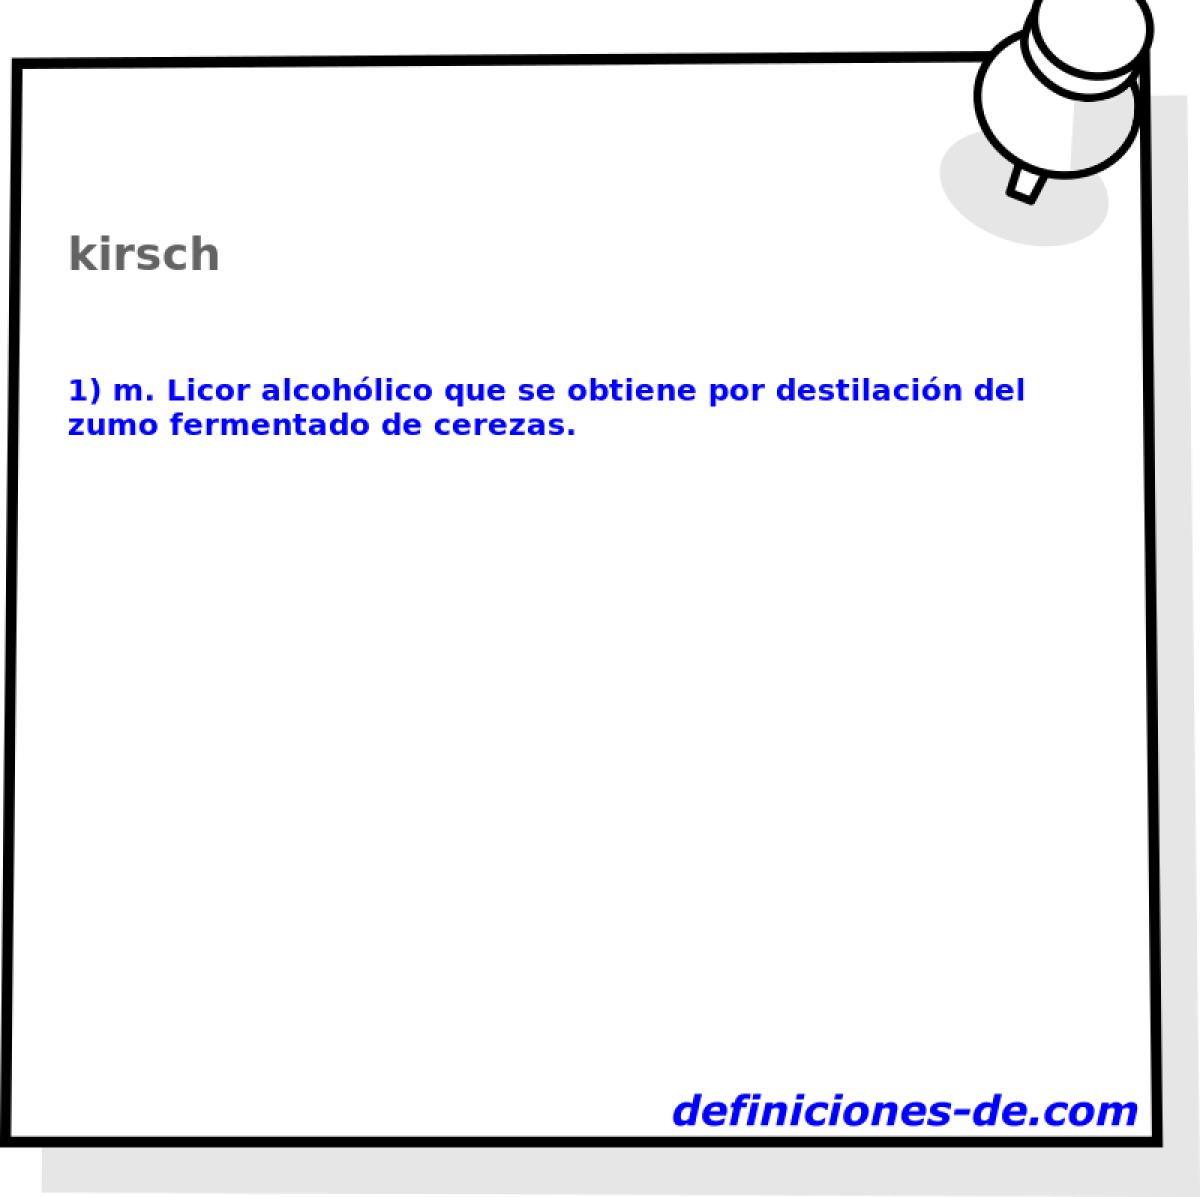 kirsch 